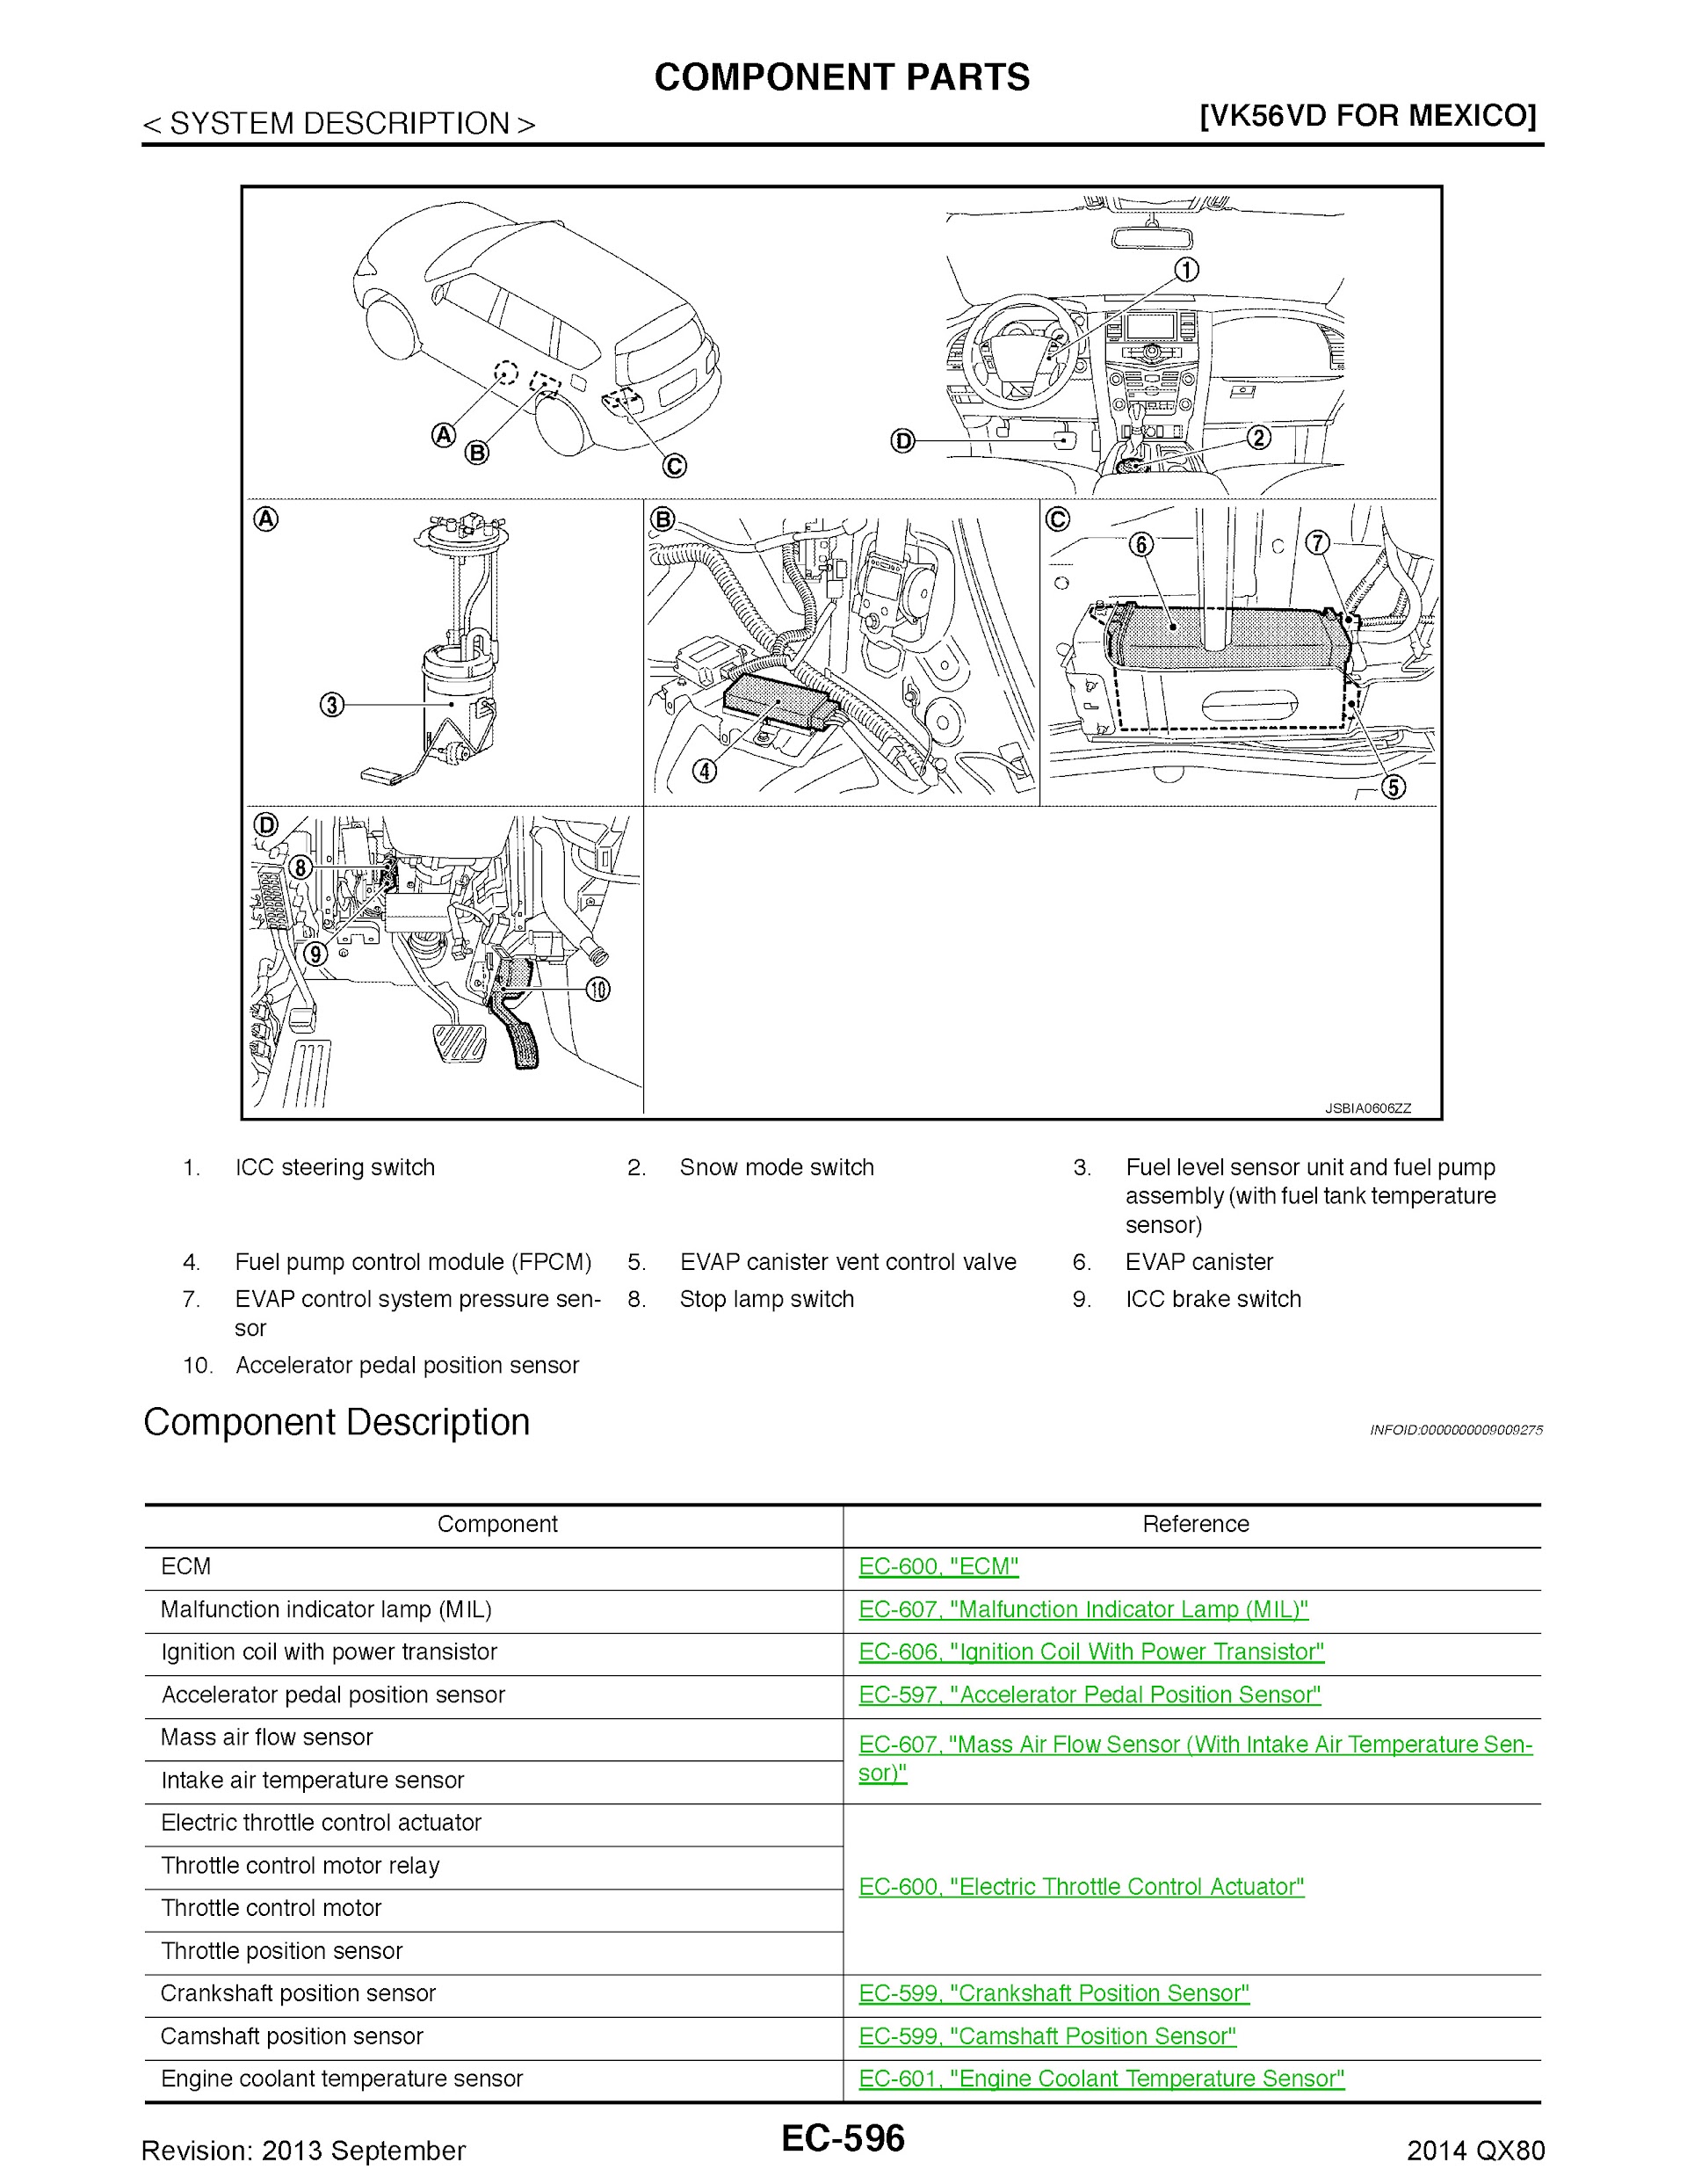 2014 Infiniti QX80 Repair Manual, VK56VD Component Parts ofr Mexico